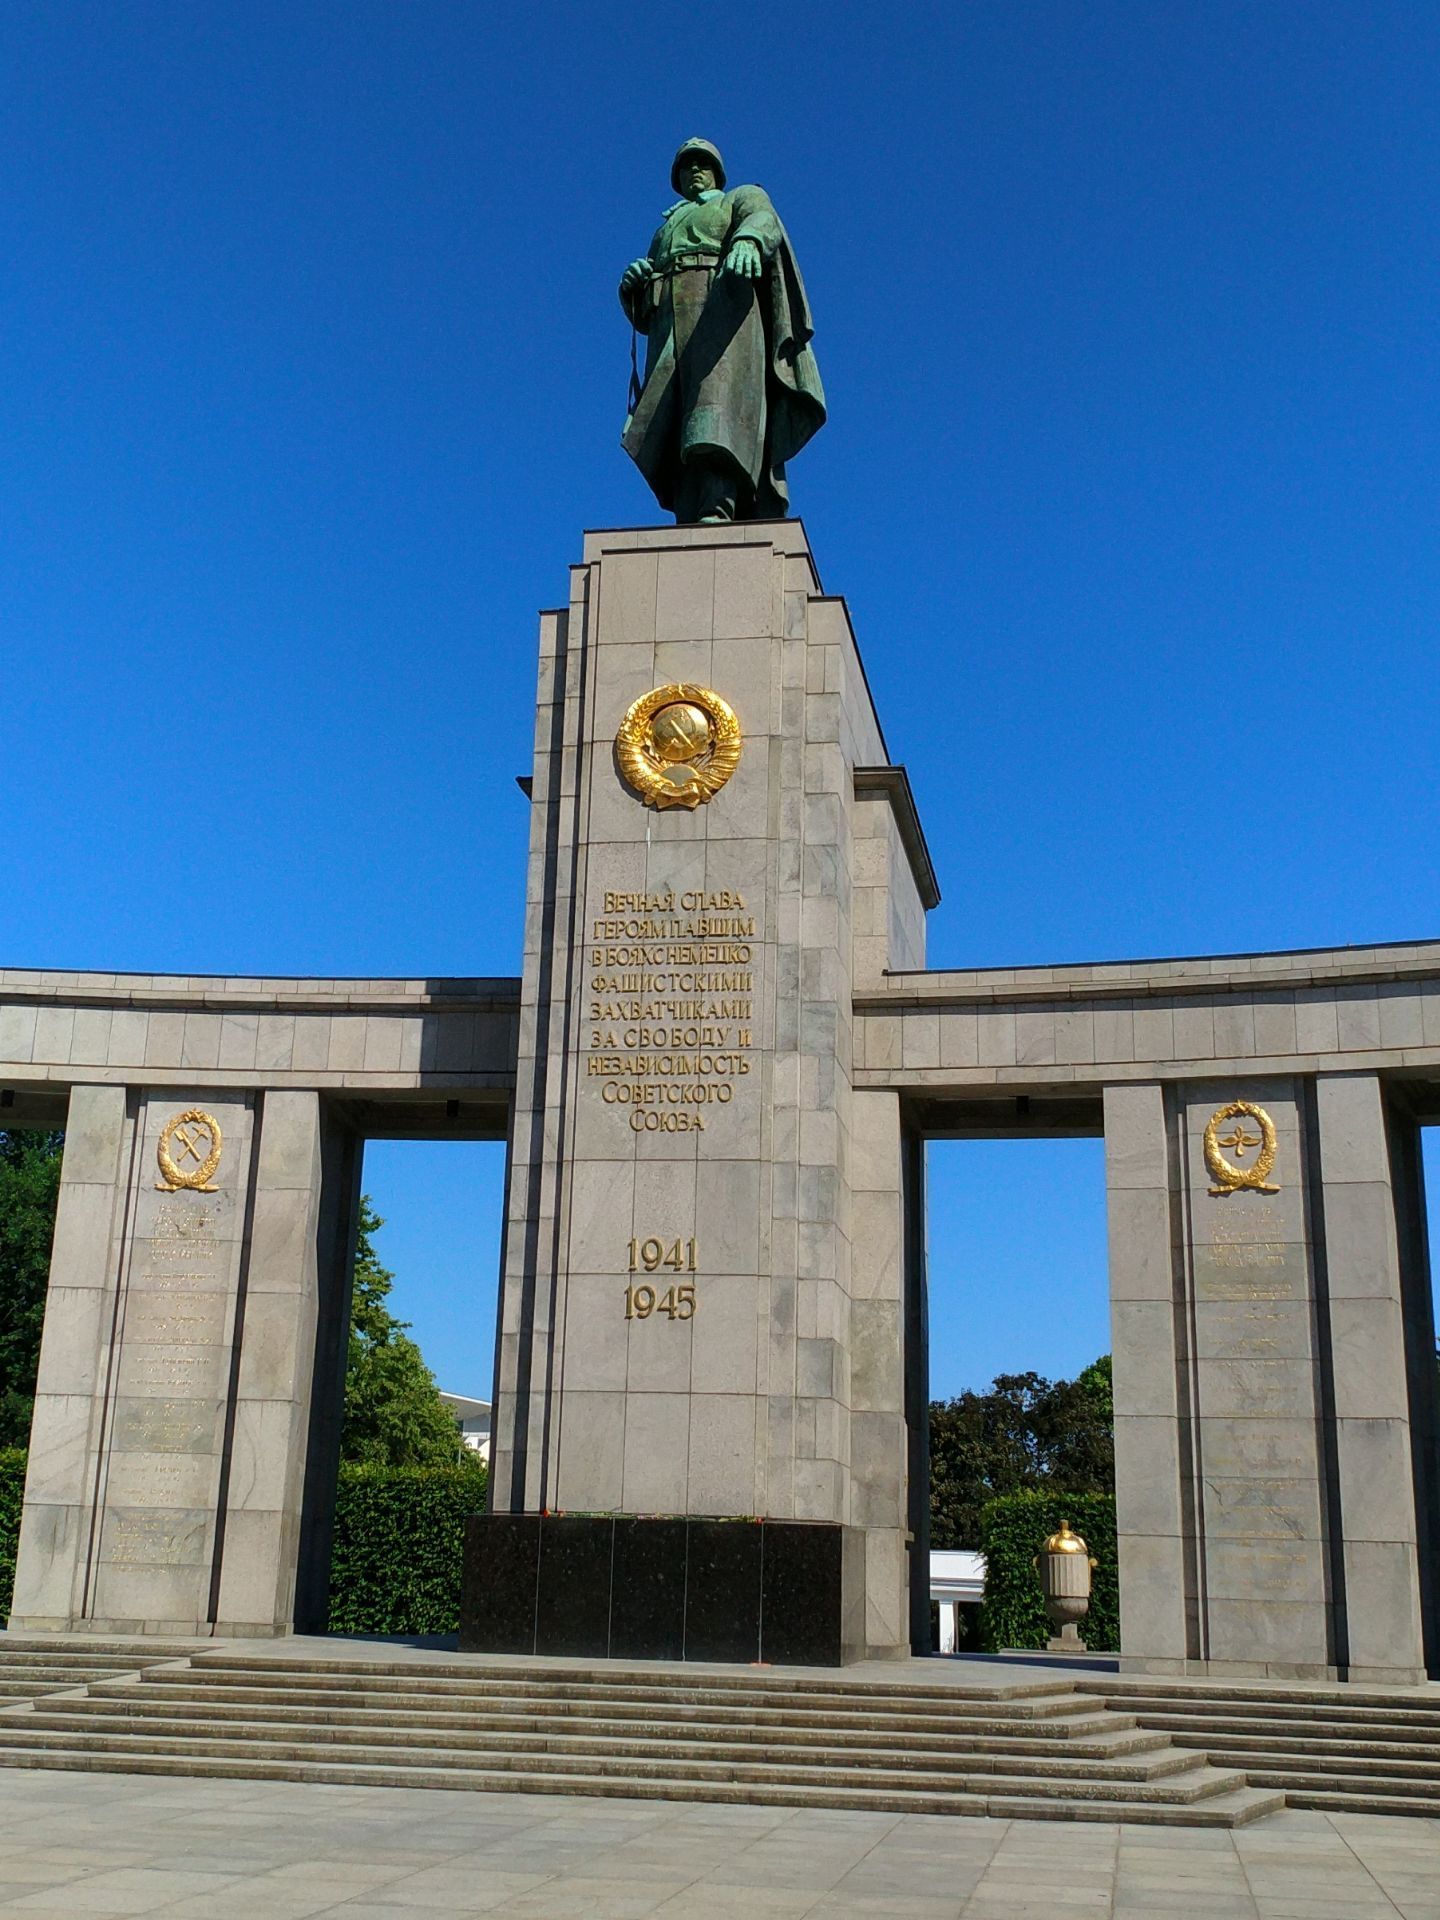 柏林苏维埃战争纪念碑攻略,柏林苏维埃战争纪念碑门票/游玩攻略/地址/图片/门票价格【携程攻略】